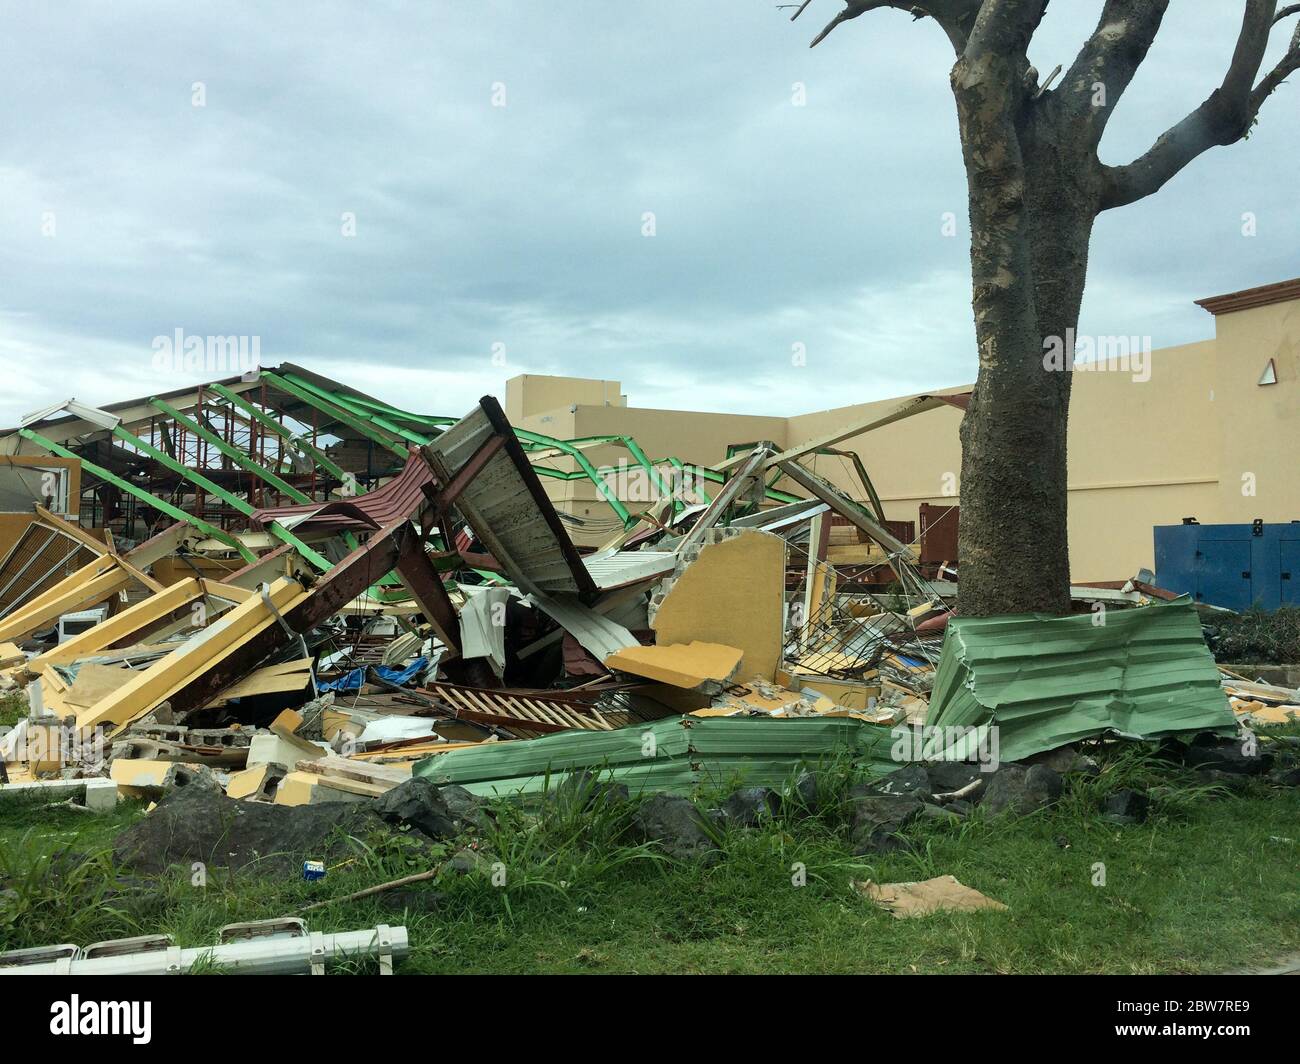 Un bâtiment complètement détruit par l'ouragan Irma sur l'île de Saint-Martin, dans les Caraïbes, en septembre 2017 Banque D'Images